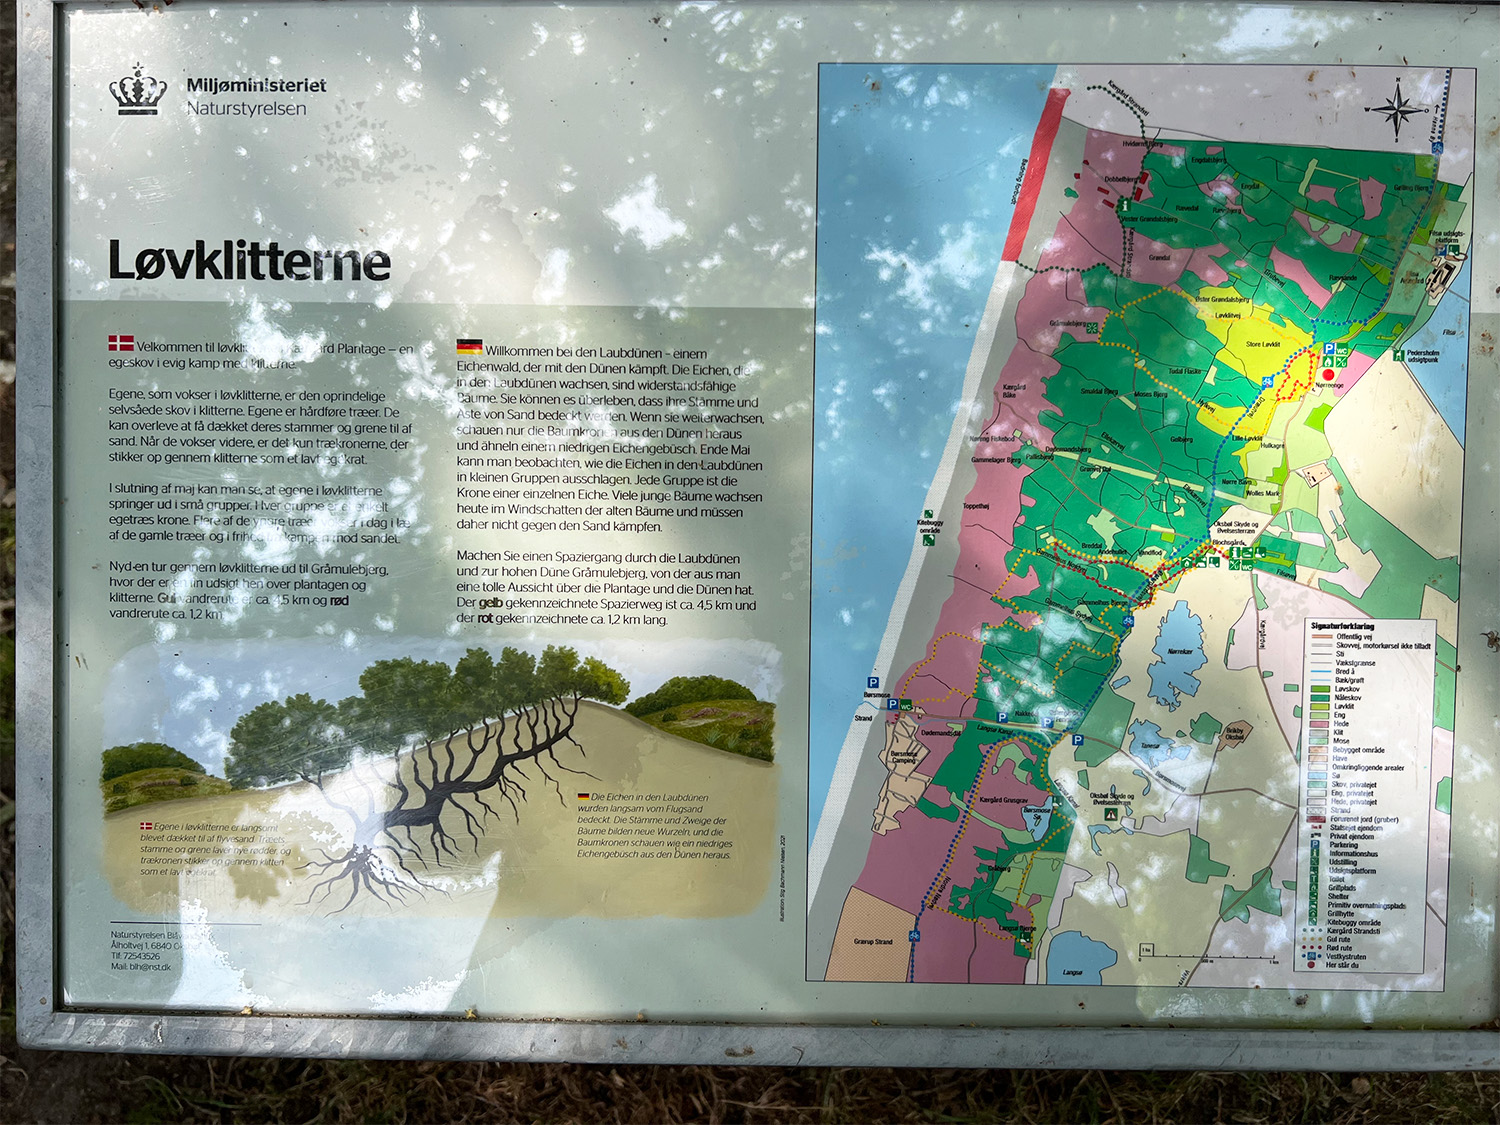 Information board by the sandy oak forest